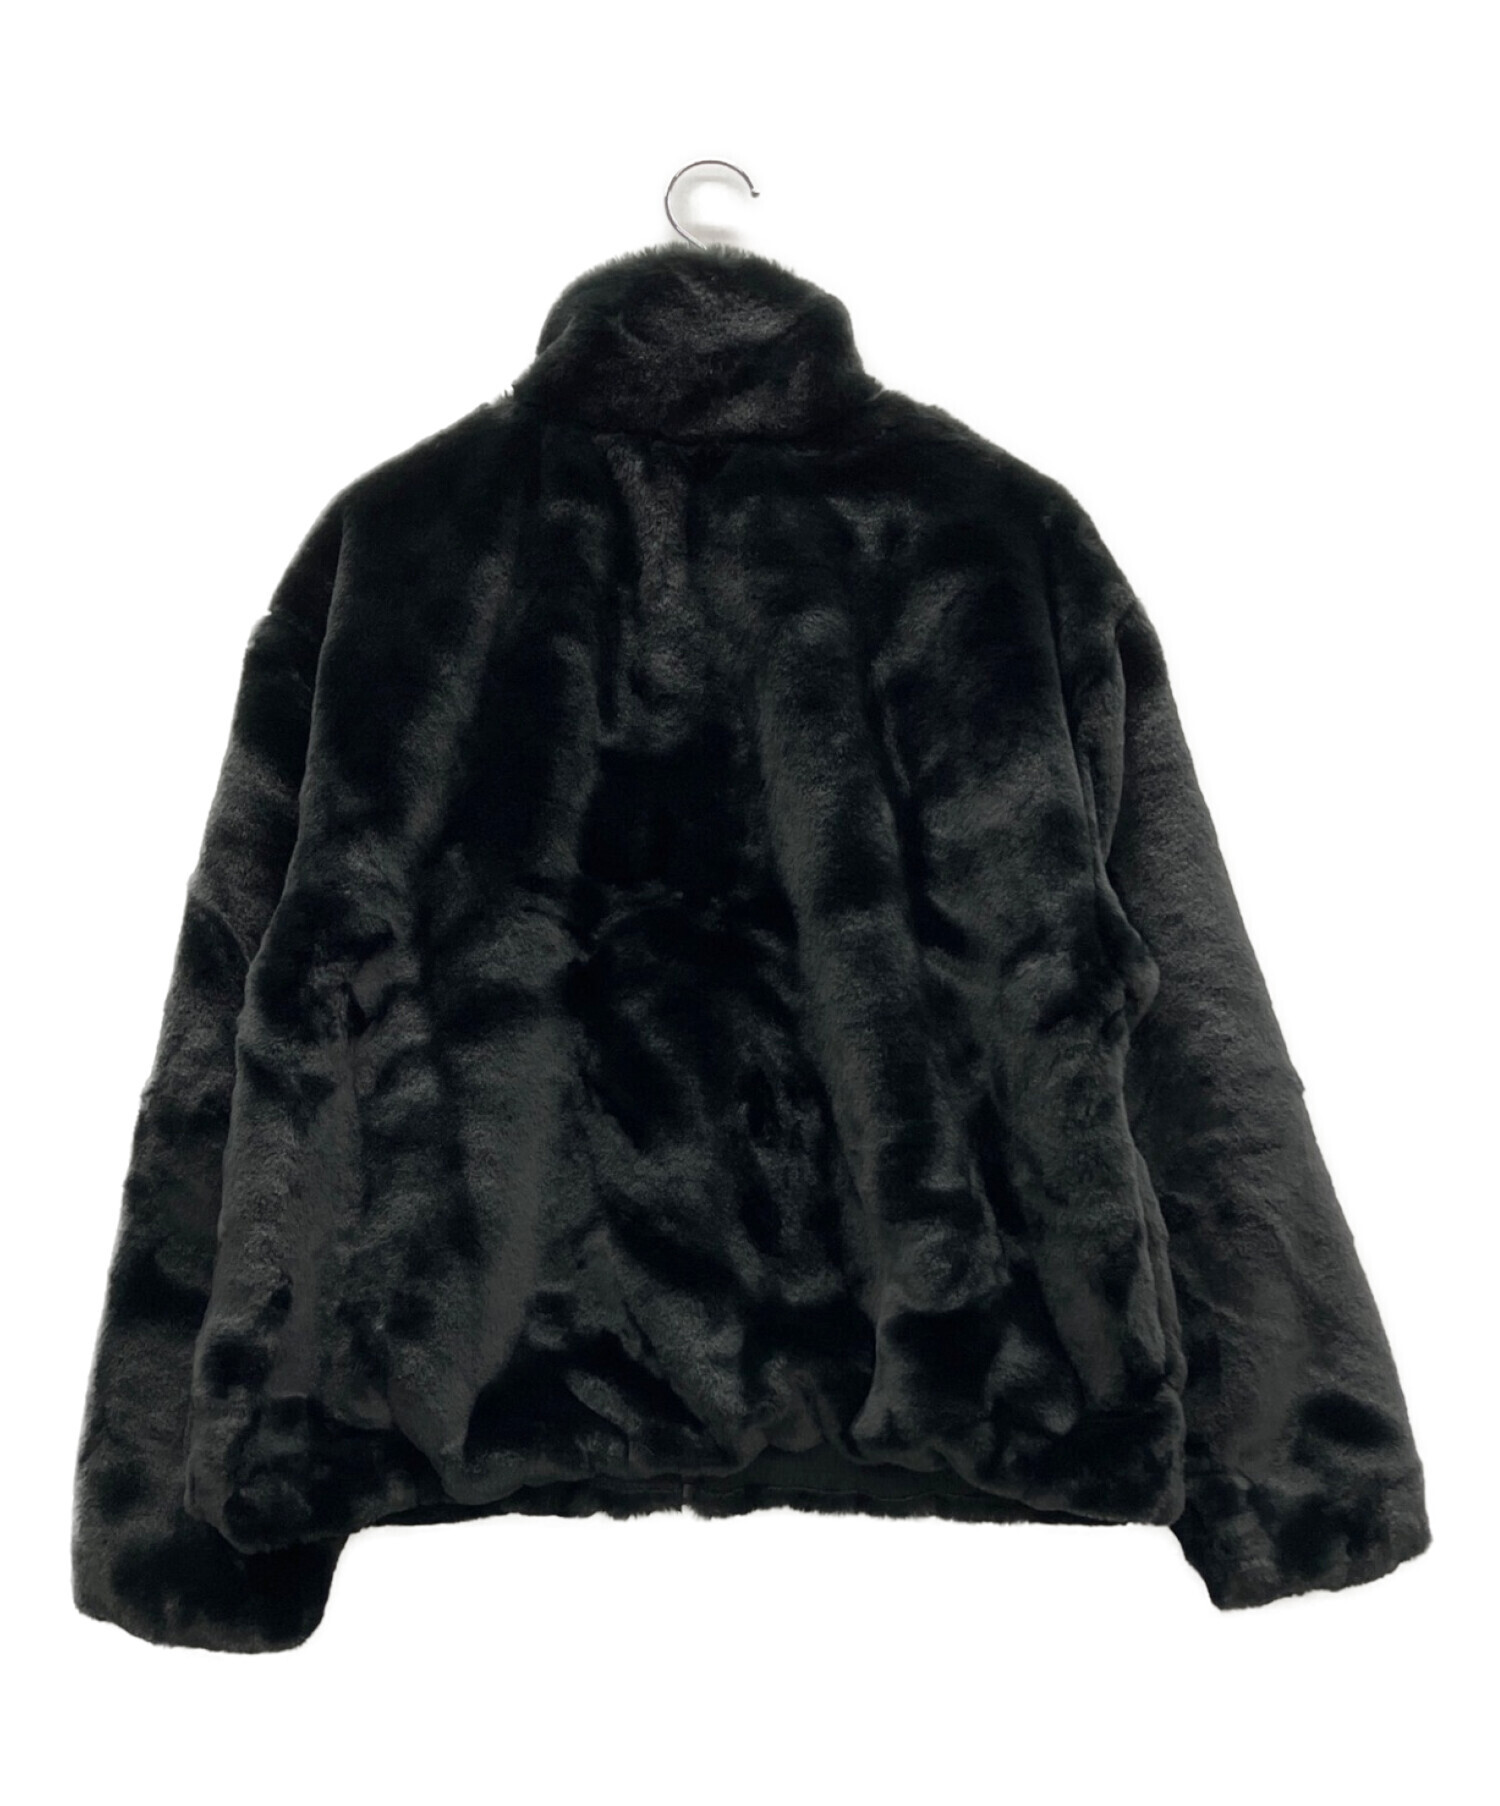 NIKE (ナイキ) フェイクファージャケット ブラック サイズ:L